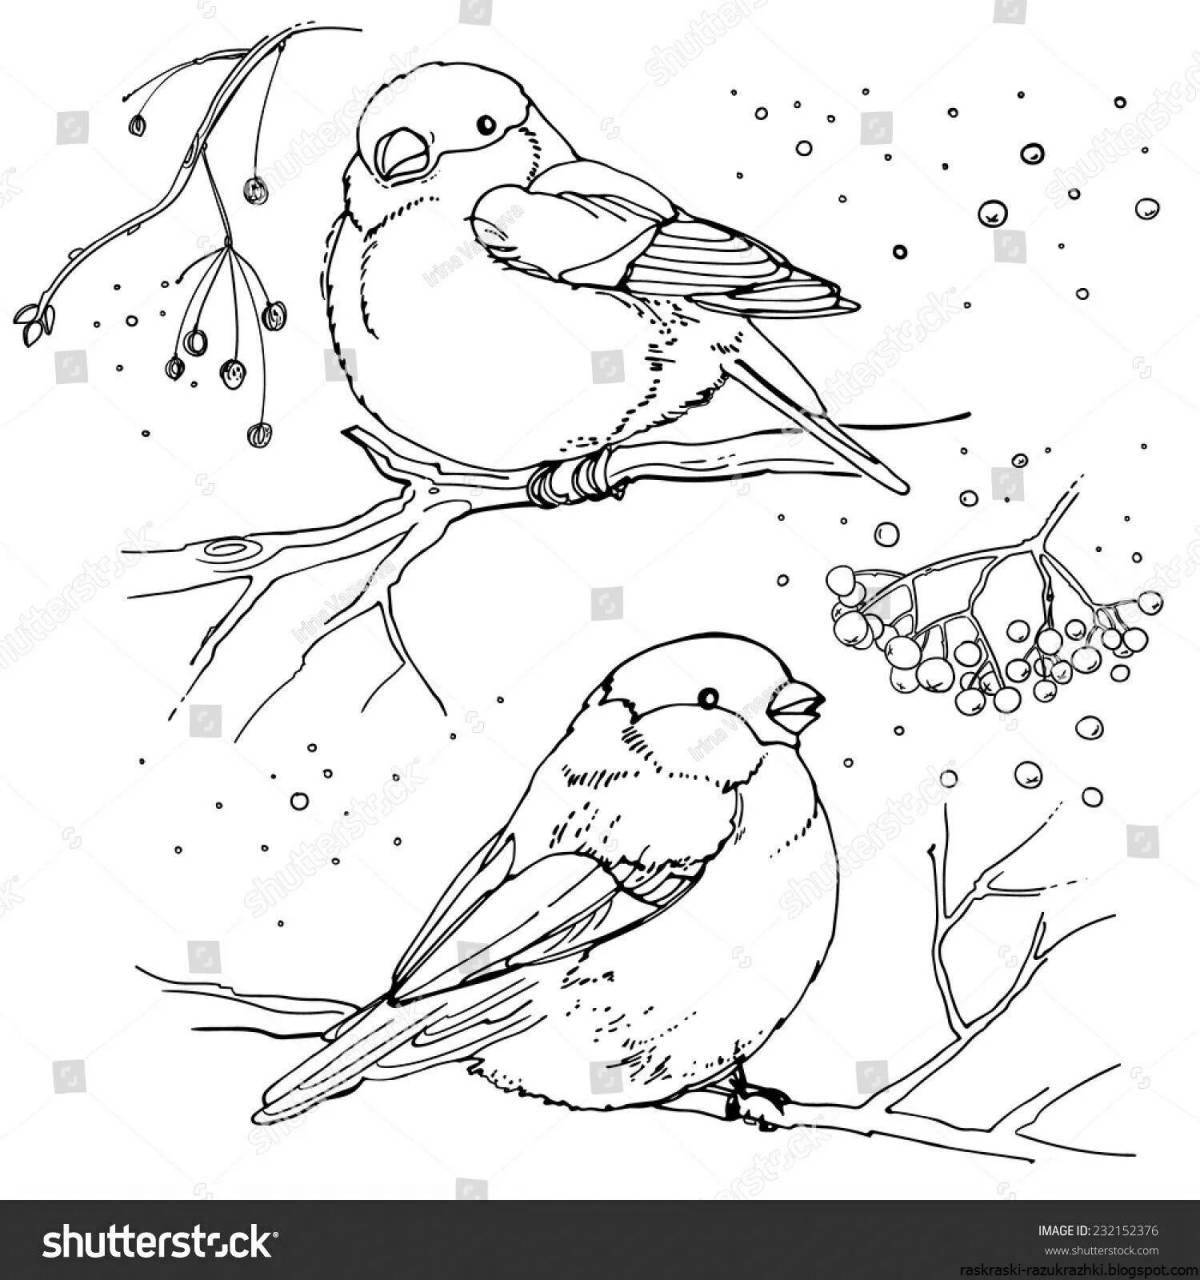 Glorious winter birds coloring book